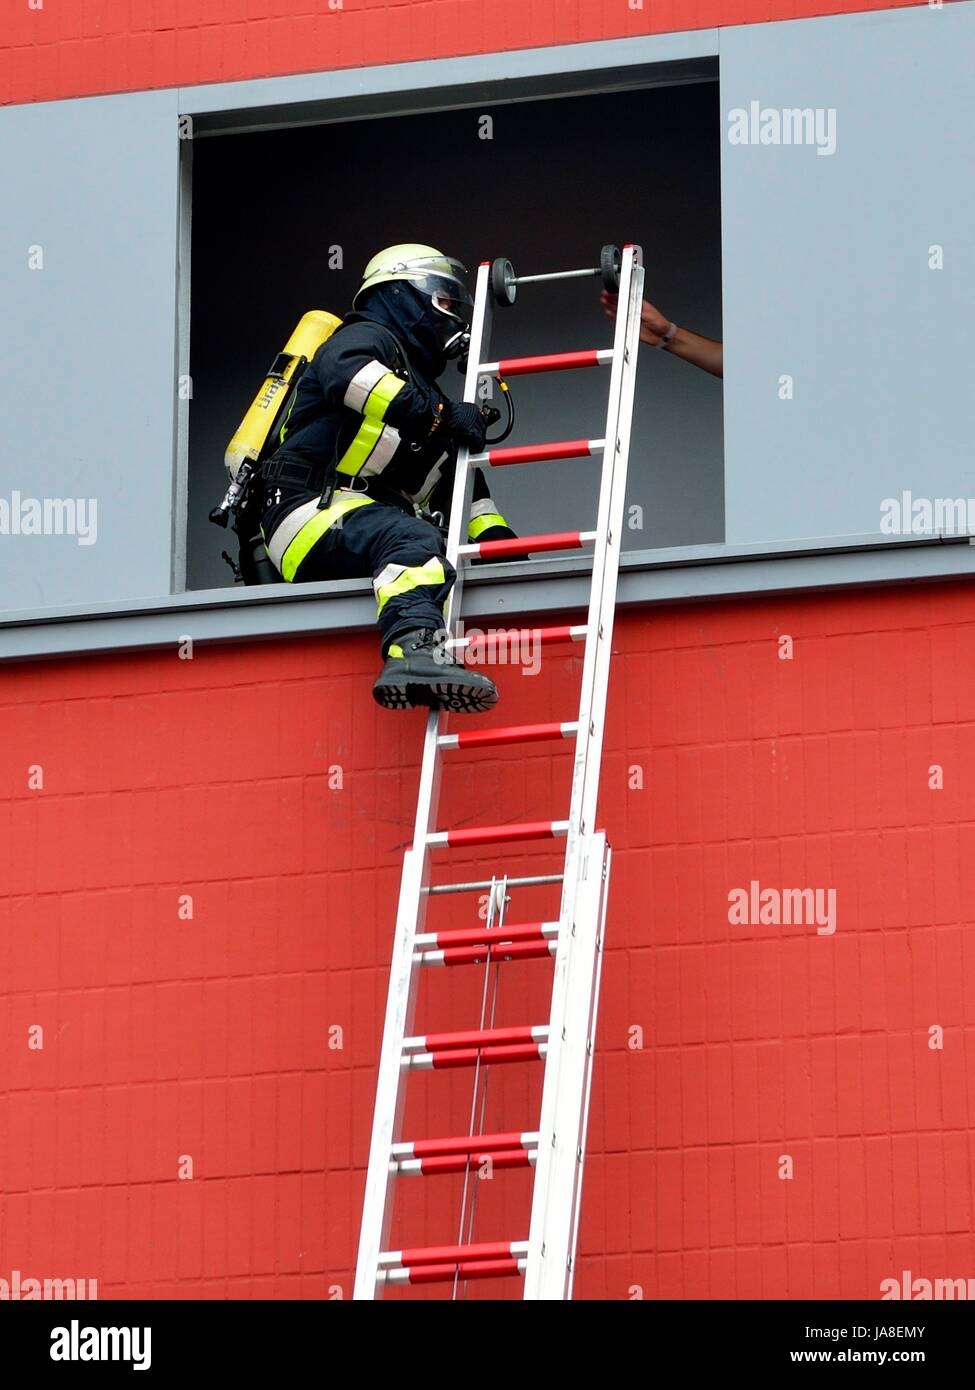 Feuerwehr: Retten, Bergen, Schützen Feuerwehrmann mit Leiter beim  einsteigen in eine Fensteröffnung zur Rettung von Menschen Stock Photo -  Alamy